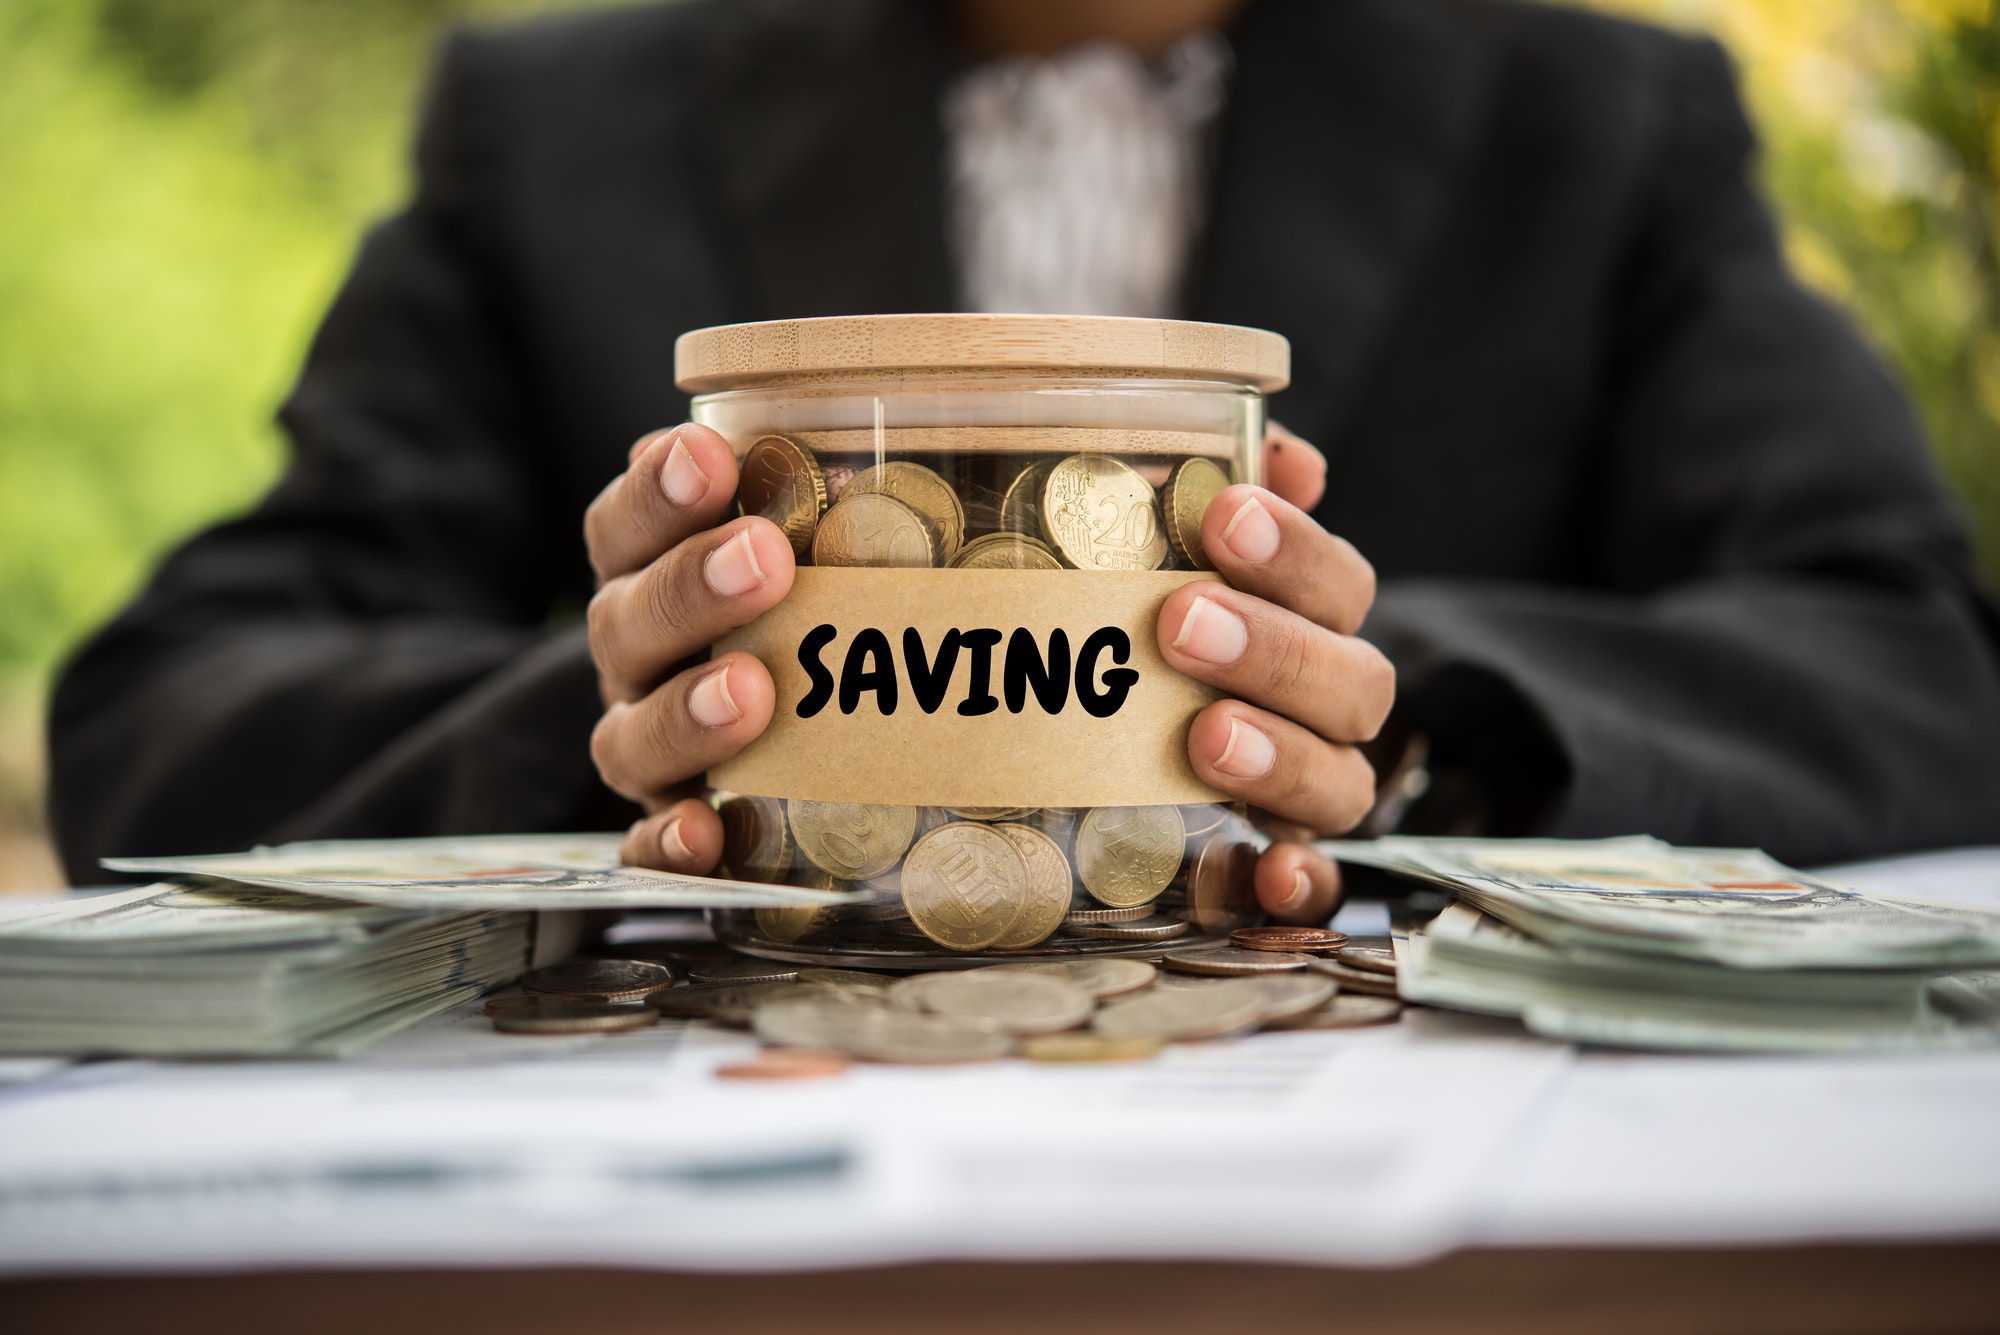 Money in a jar labeled savings representing Medicare savings programs.